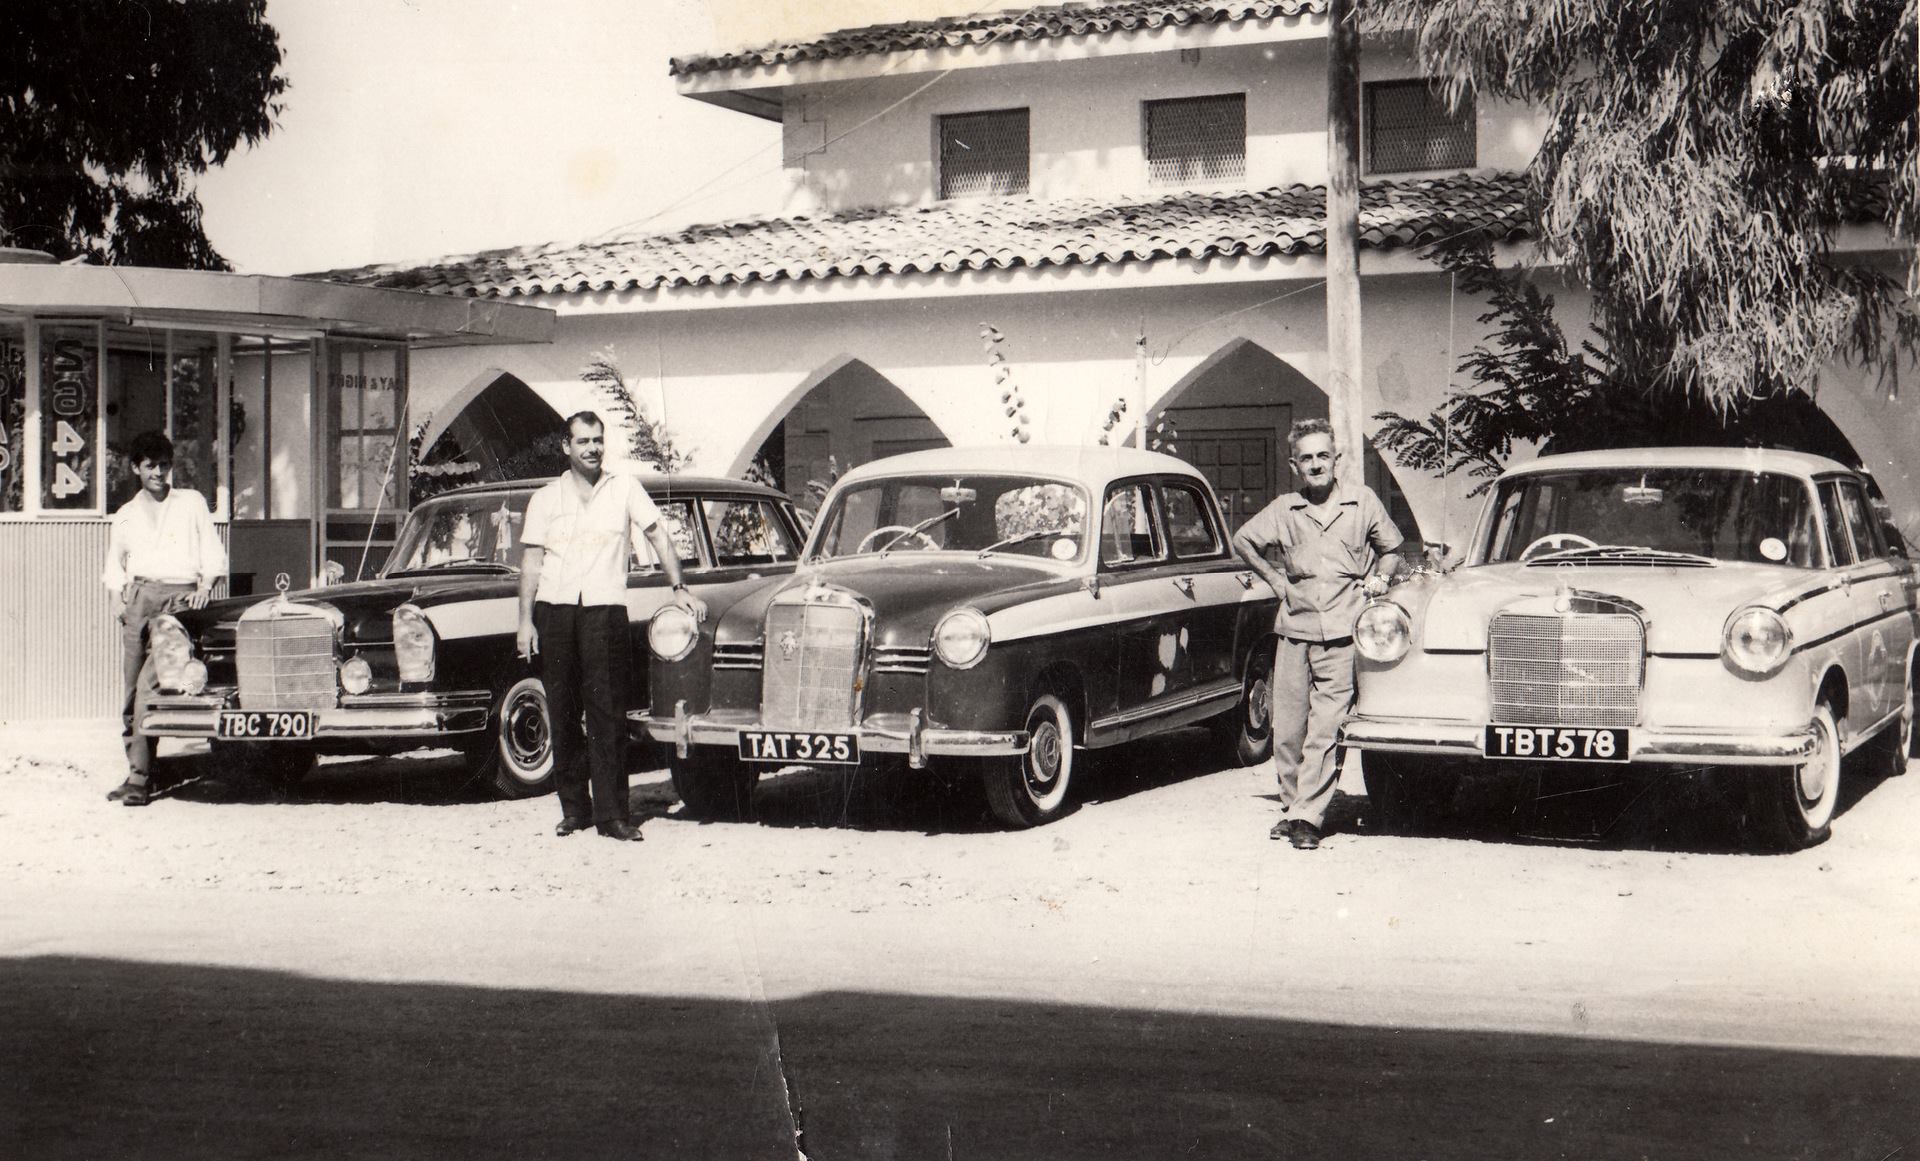 ΠΕΡΕΝΤΟΣ STORIES: Κύπρος Λουκά (1928-2011) – Ένας αλλιώτικος ταξιτζής